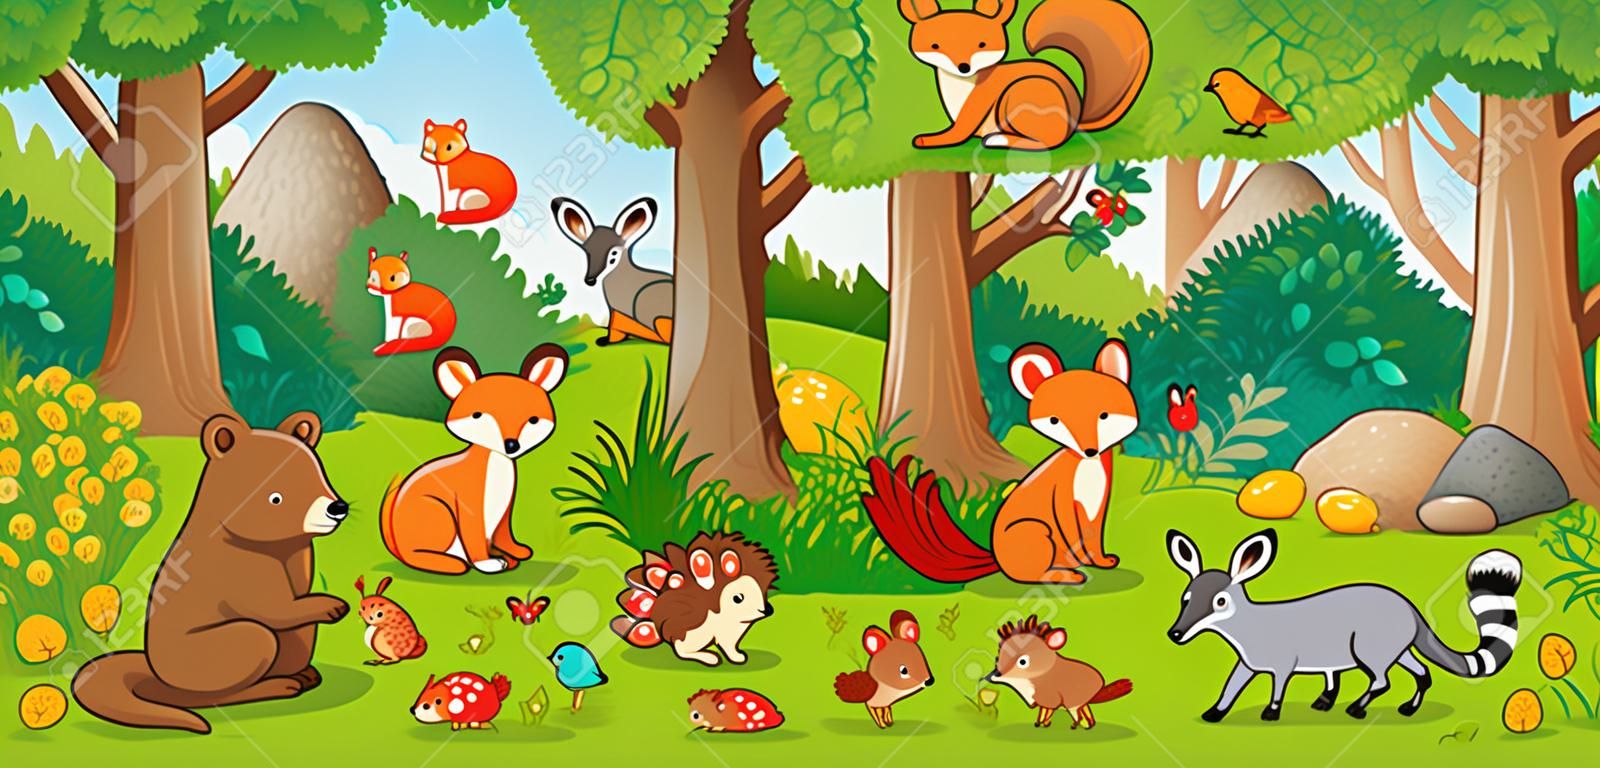 Vektorillustration mit niedlichen Waldtieren im Kinderstil. Eine Reihe von Säugetieren im Wald. Kollektion im Kinderstil.